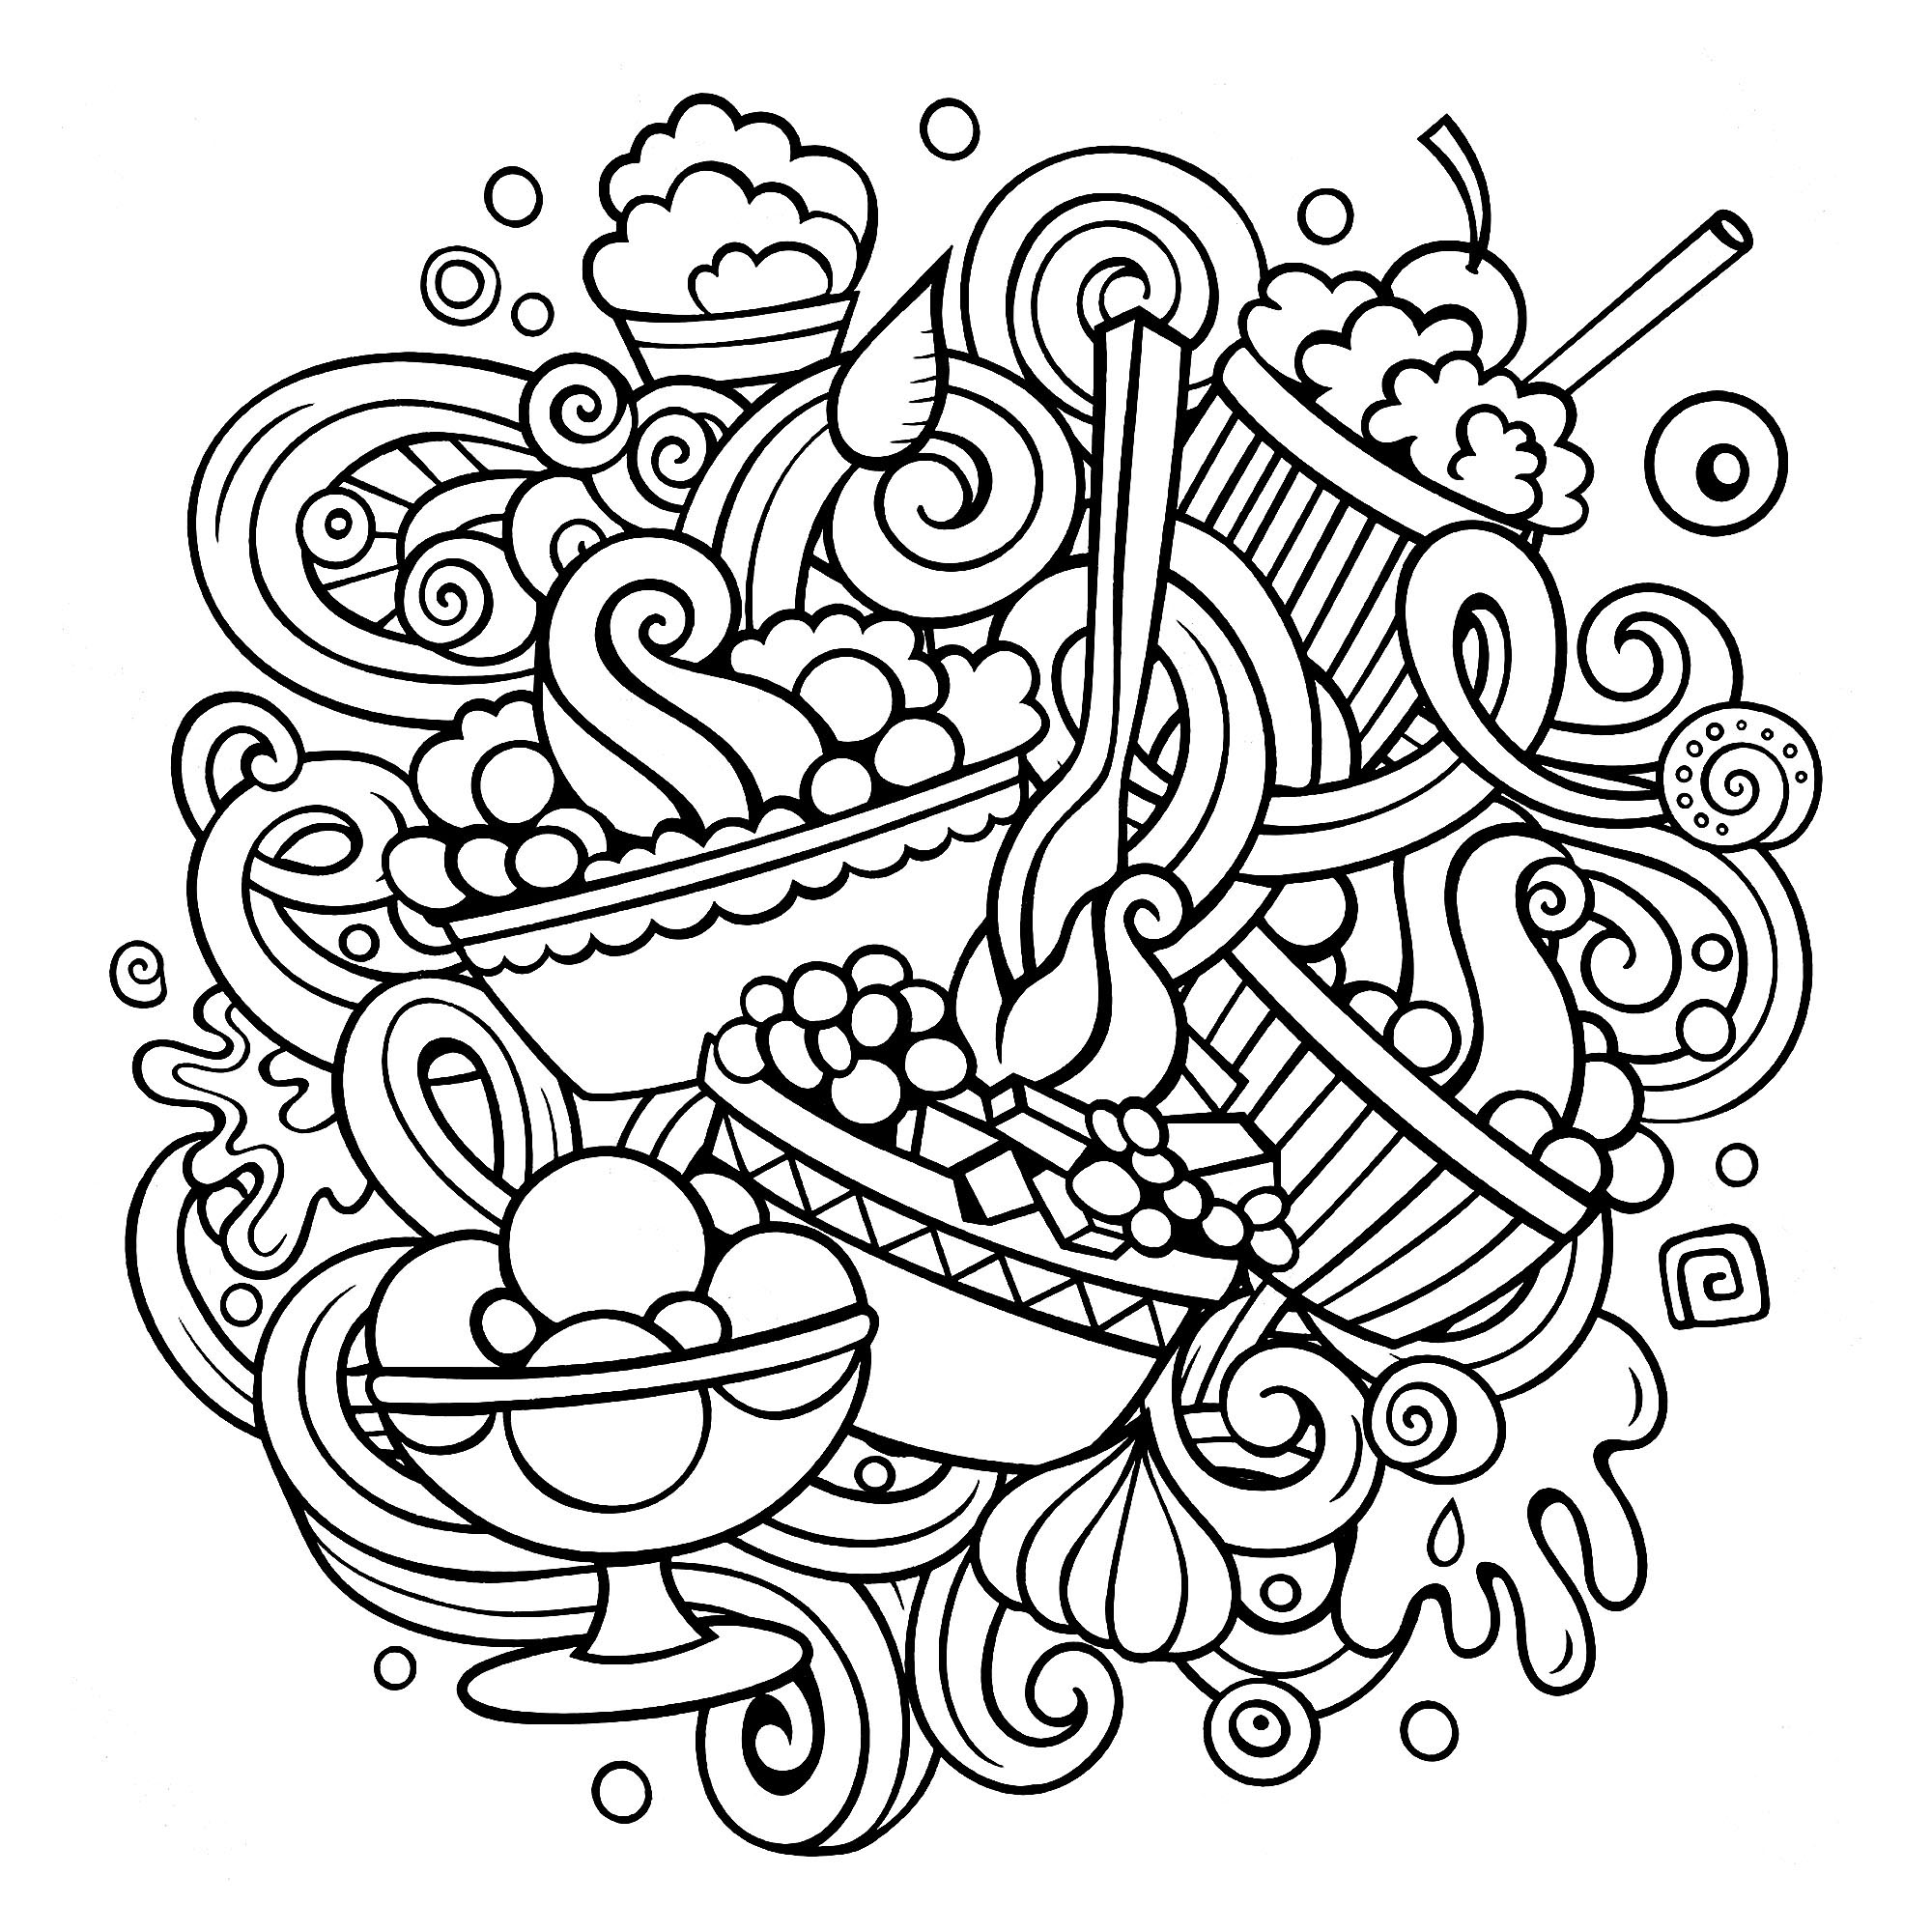 Un dessin de style Doodle avec de nombreuses pâtisseries semblant délicieuses